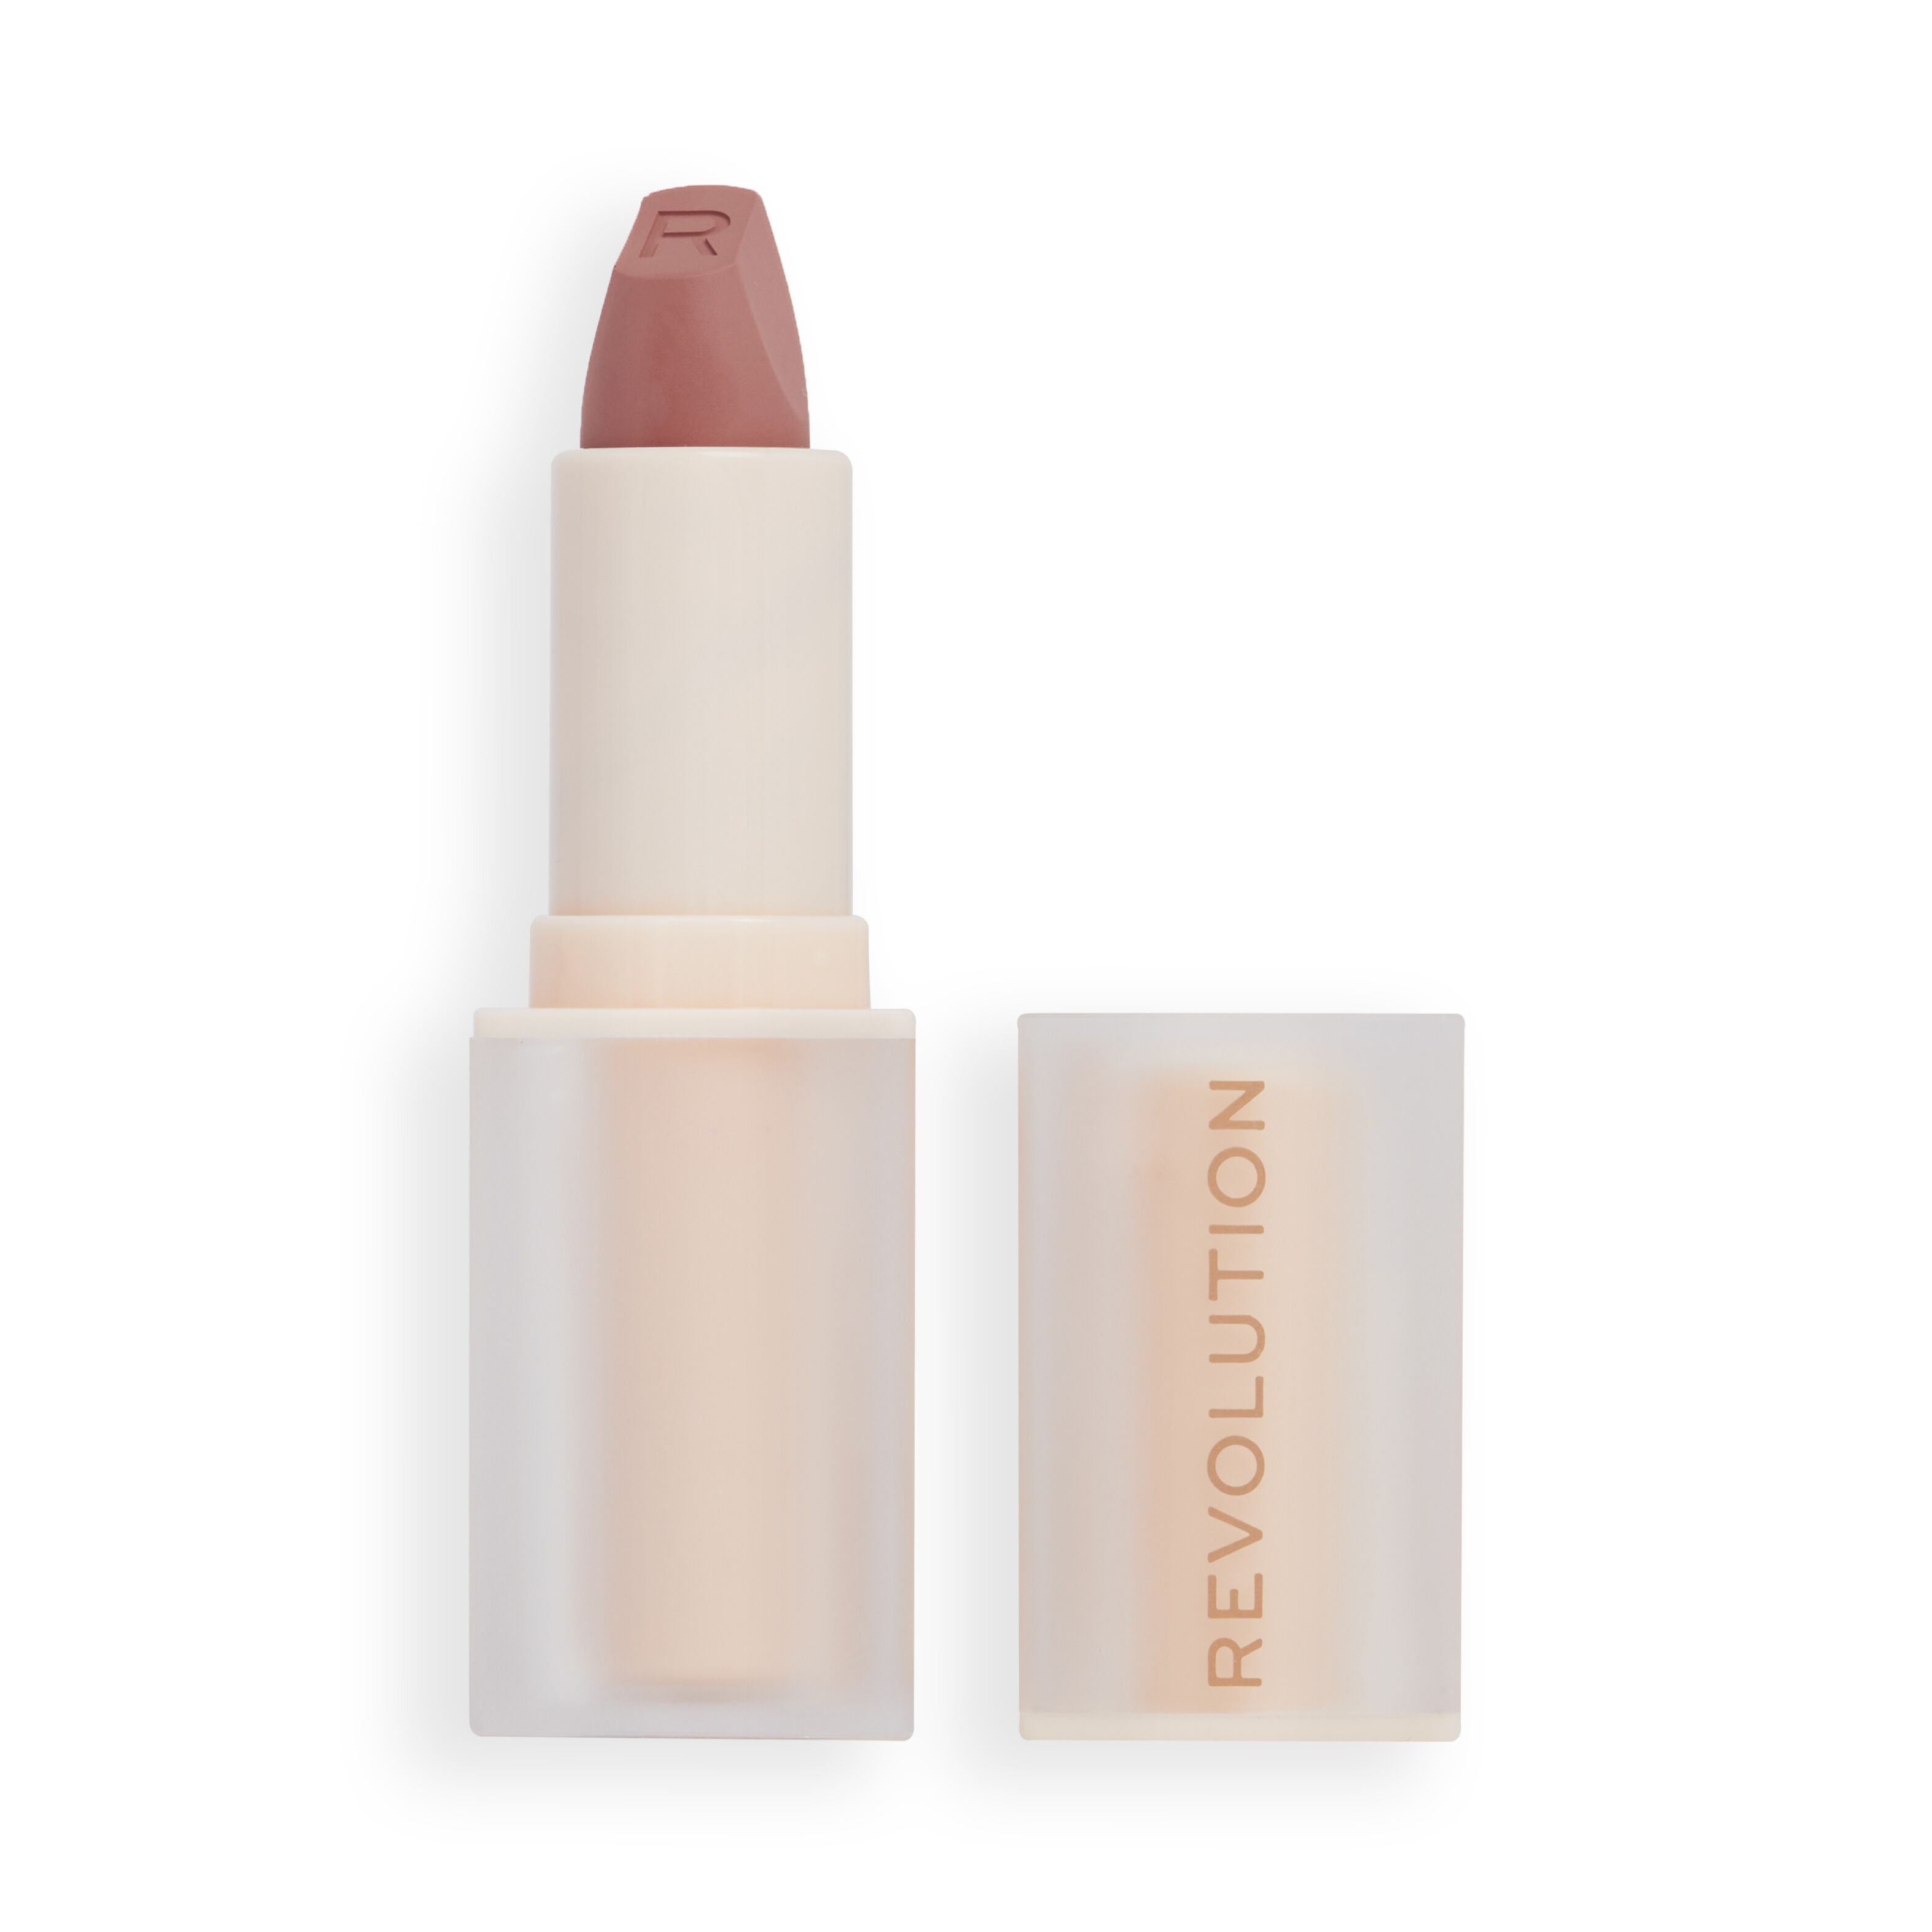 Помада Makeup Revolution для губ Lip Allure Soft Satin Lipstick Brunch Pink Nude бальзамы для губ сделанопчелой pink nude